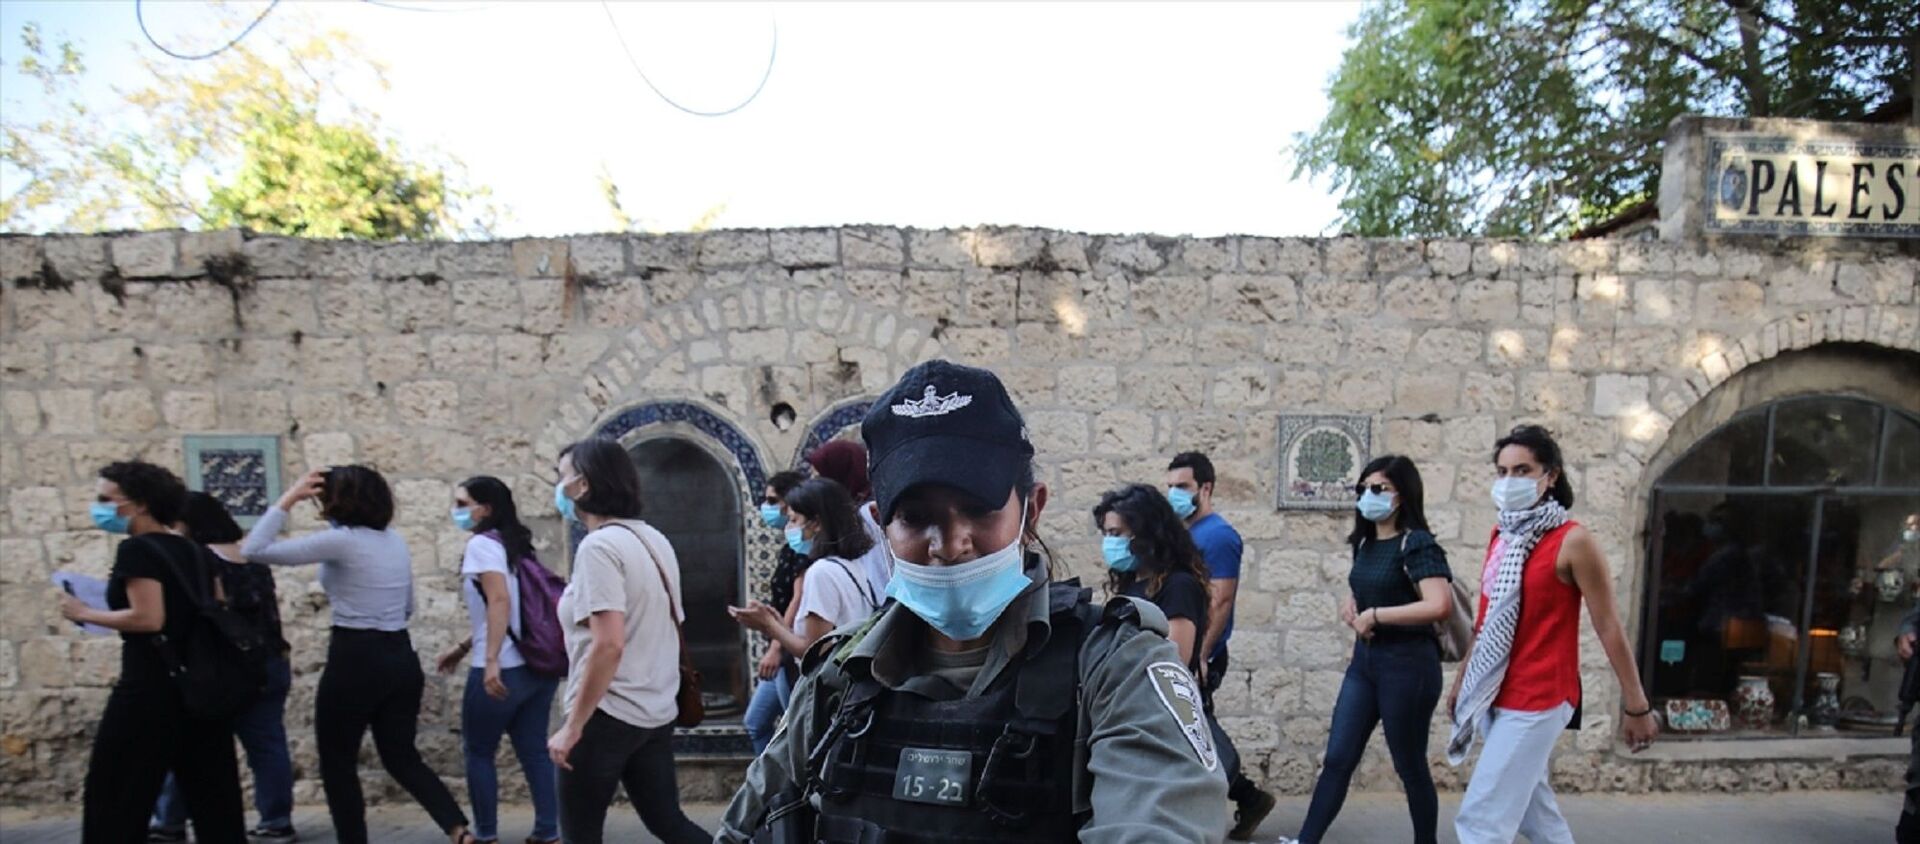 İsrail polisi, Doğu Kudüs’te otizmli İyad Hallak'ın öldürülmesine tepki amacıyla düzenlenen gösteriye müdahale ederek 3 Filistinli kadını gözaltına aldı. - Sputnik Türkiye, 1920, 05.05.2021